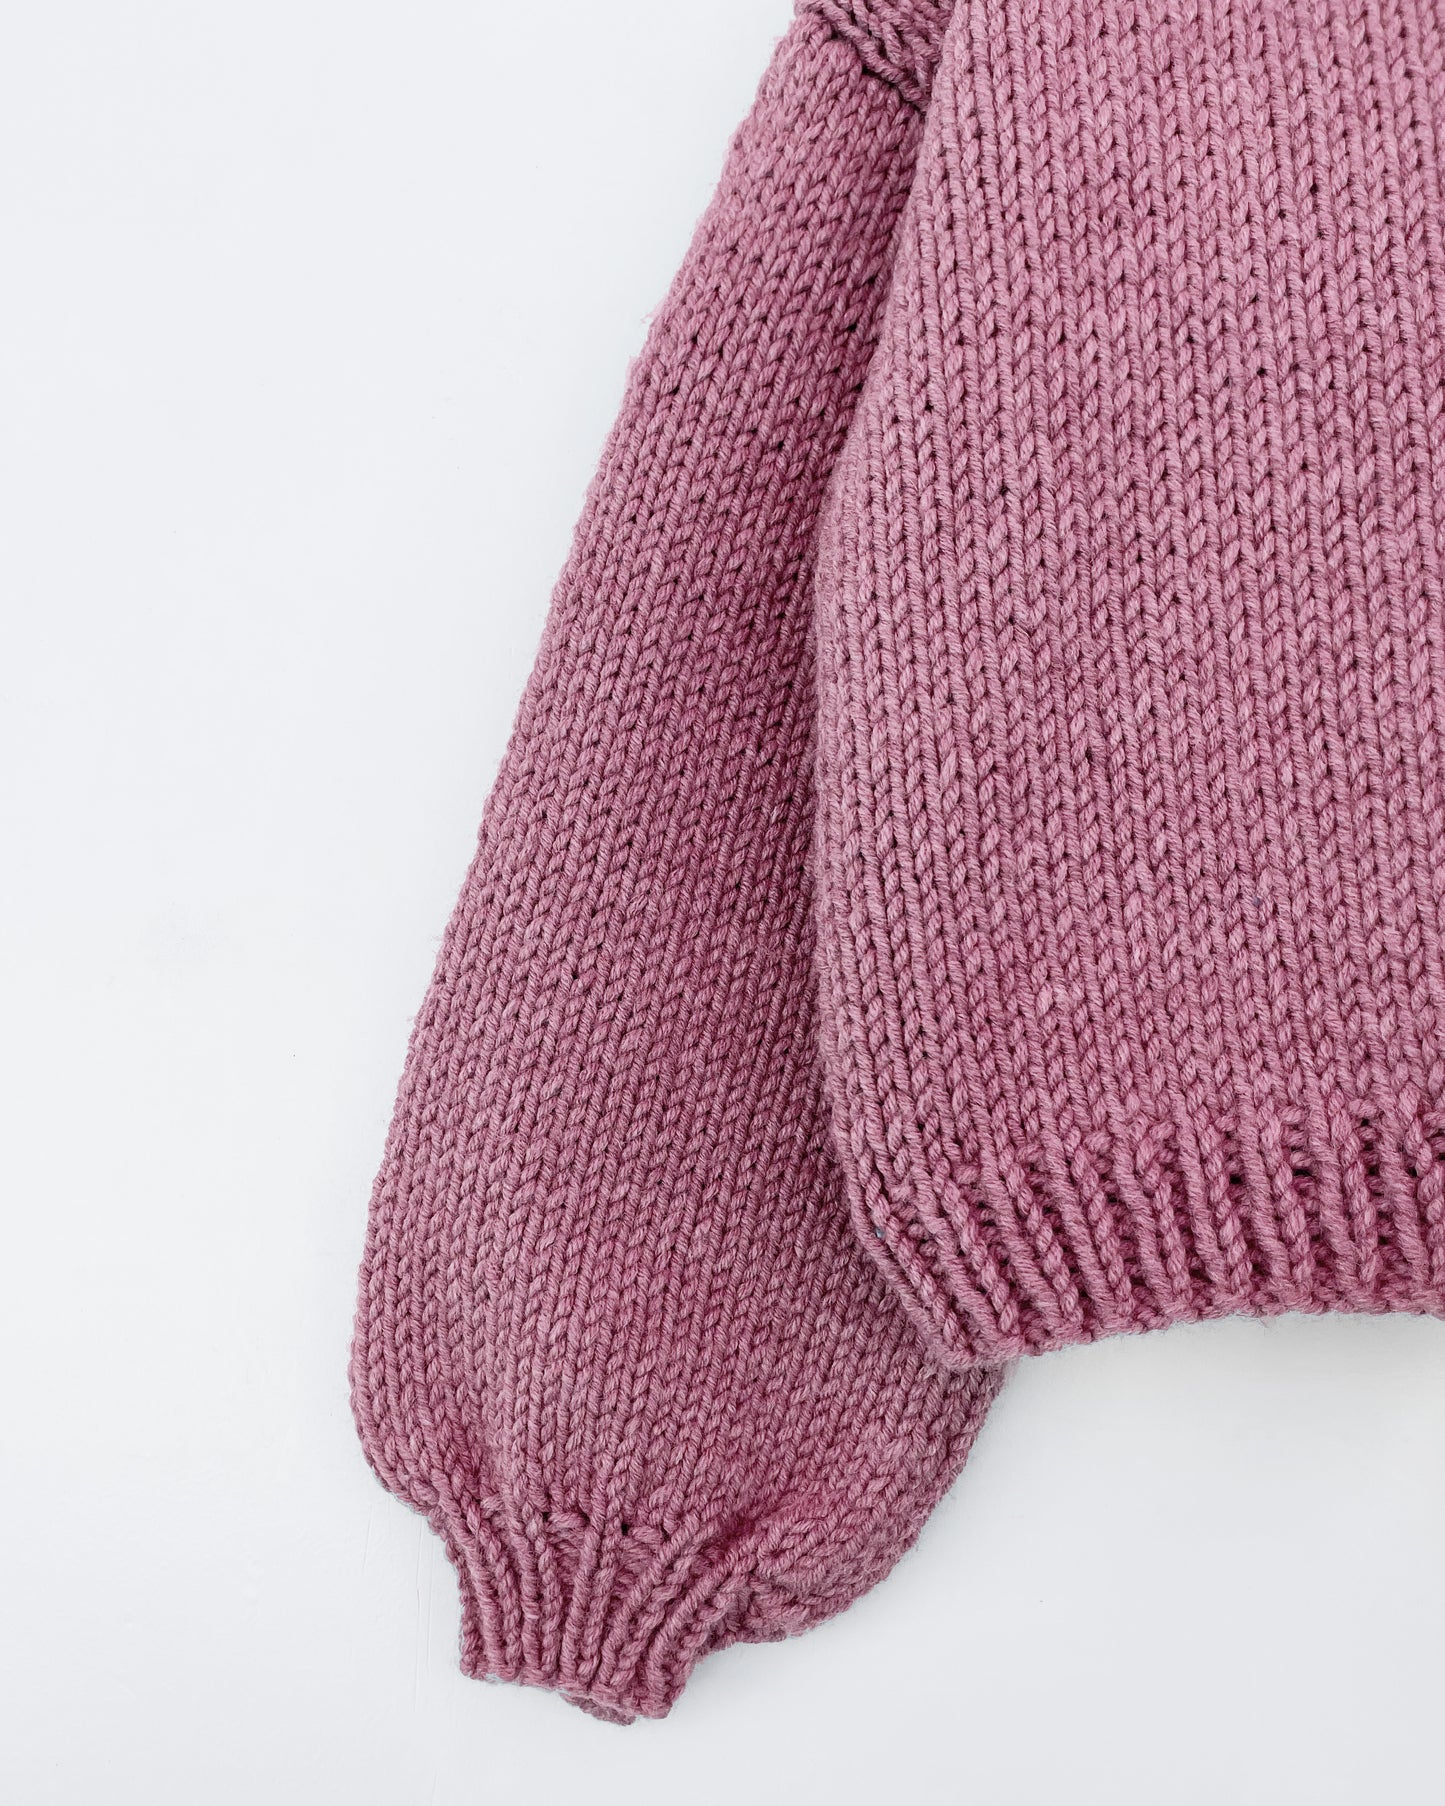 Kids' Sweater No.4 | Knitting chunky sweater pattern